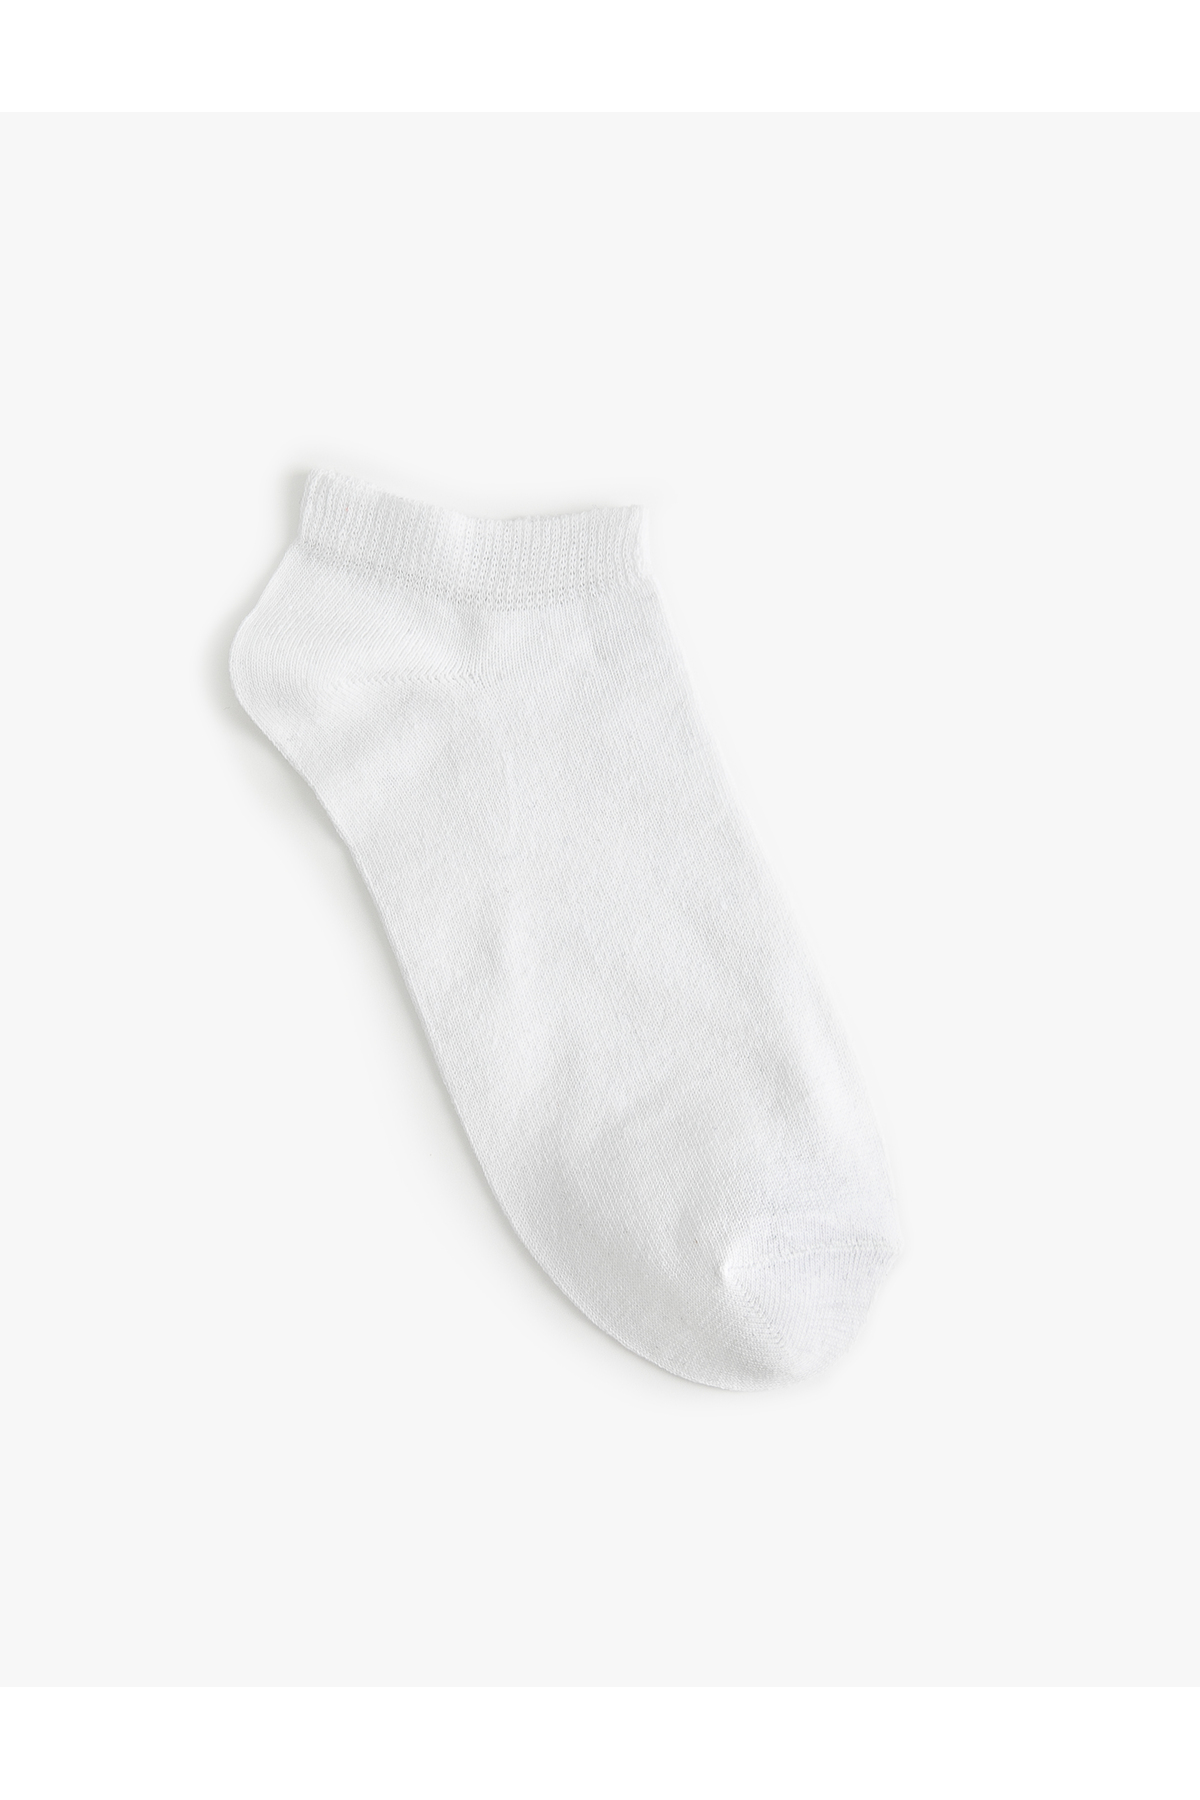 Koton Basic 10-Piece Set of Booties and Socks